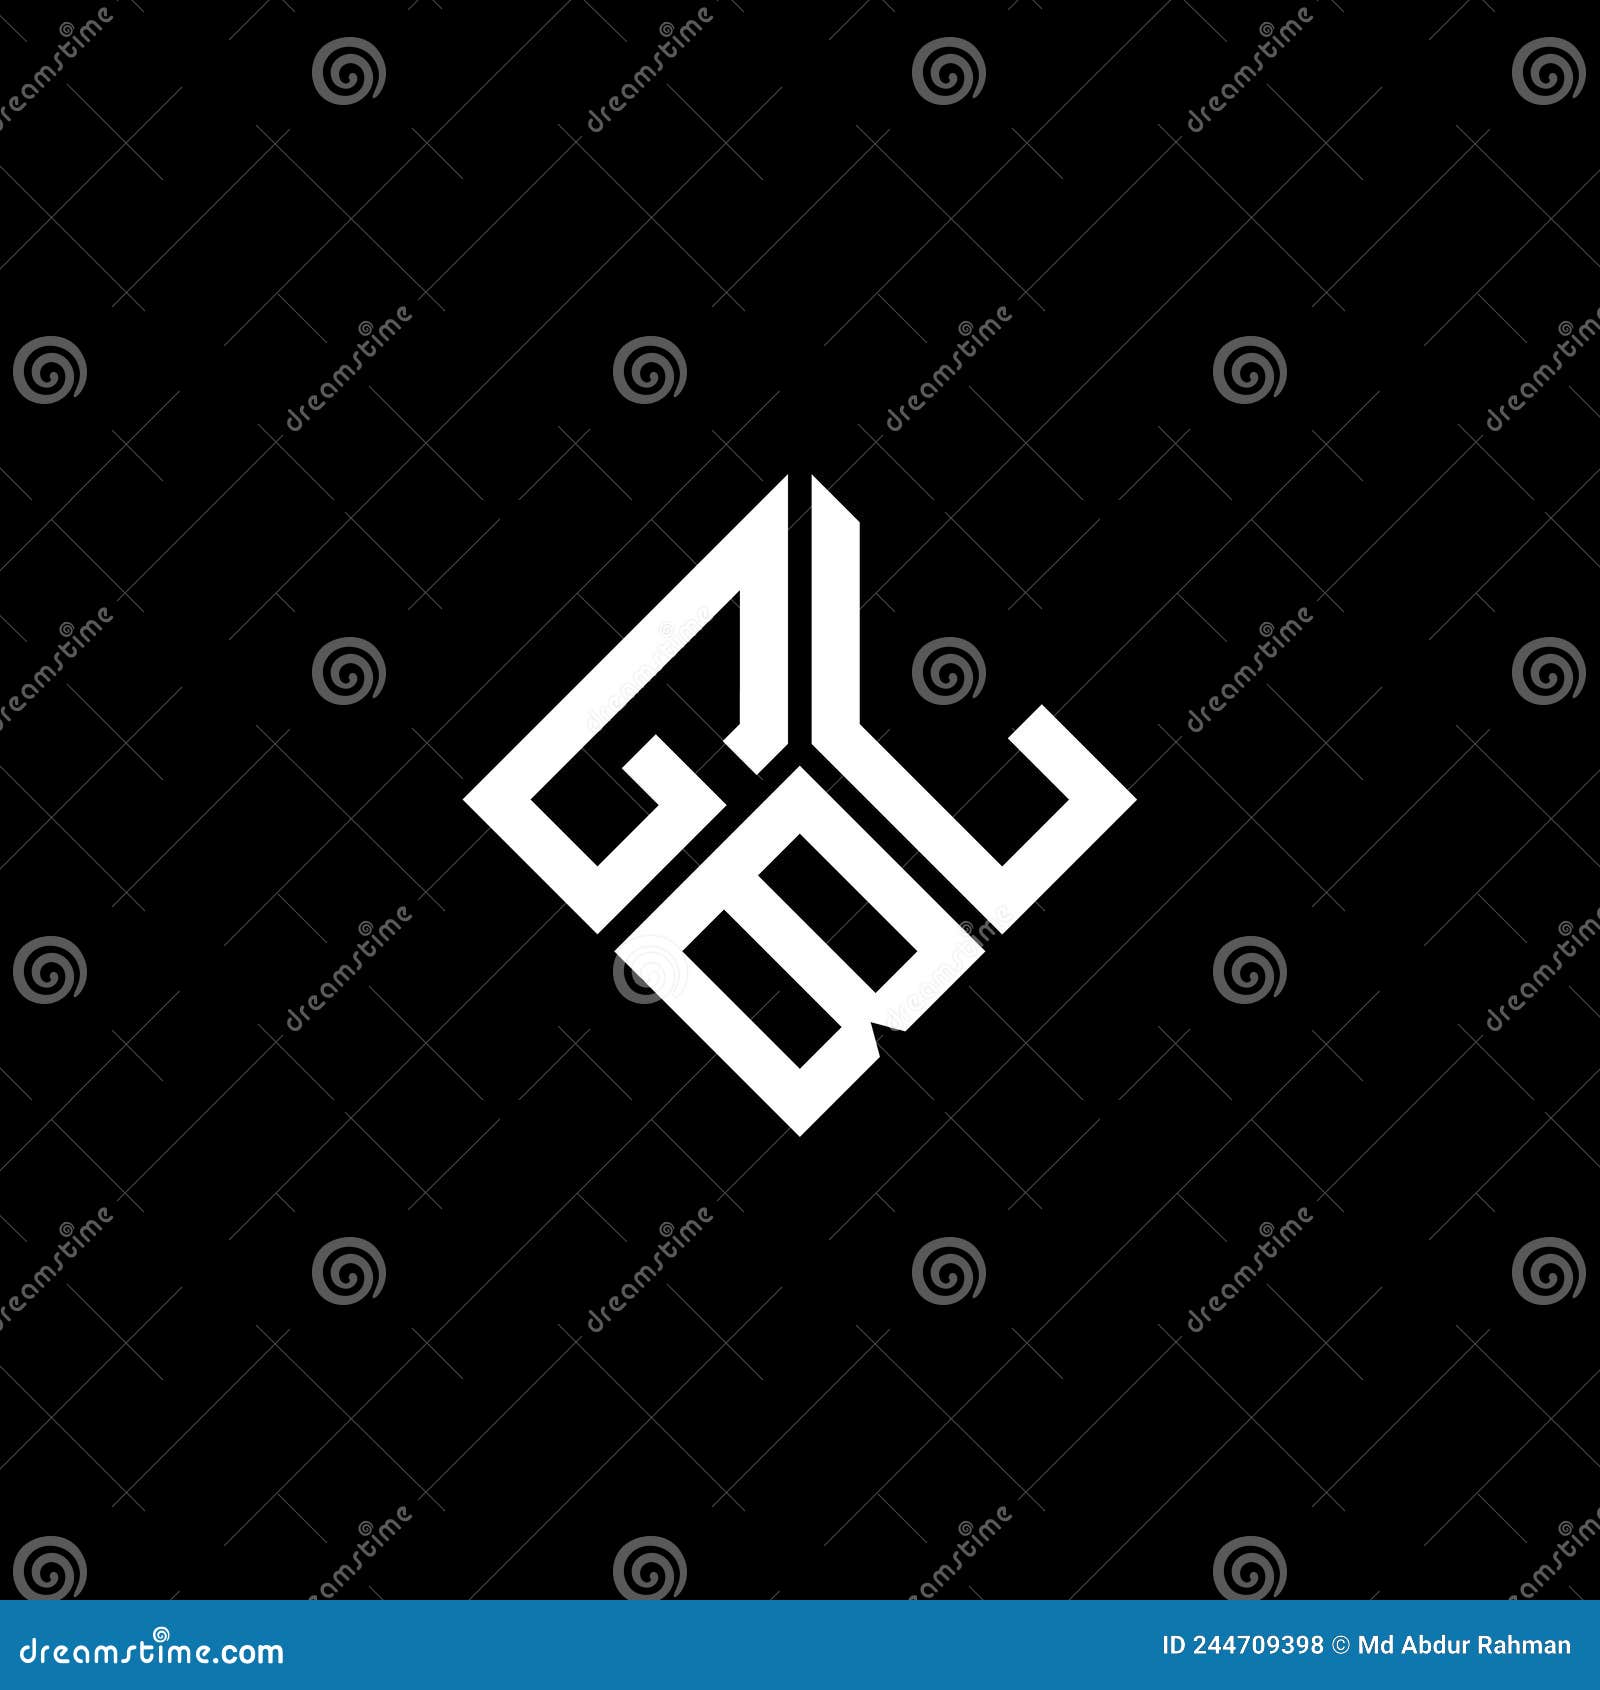 gbl letter logo  on black background. gbl creative initials letter logo concept. gbl letter 